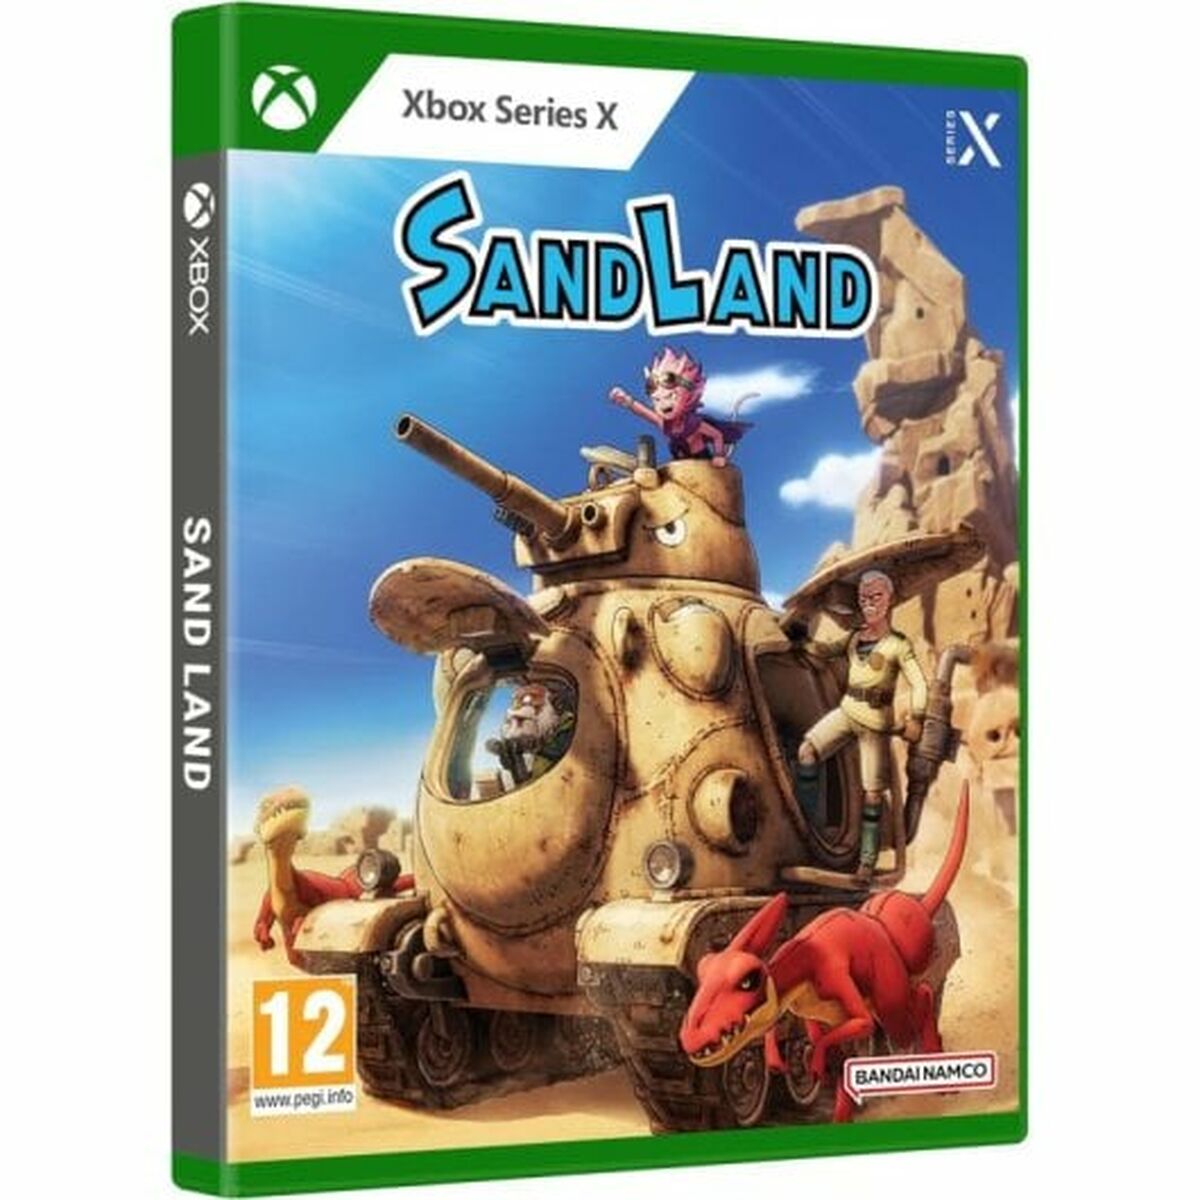 Jeu vidéo Xbox Series X Bandai Namco Sand Land